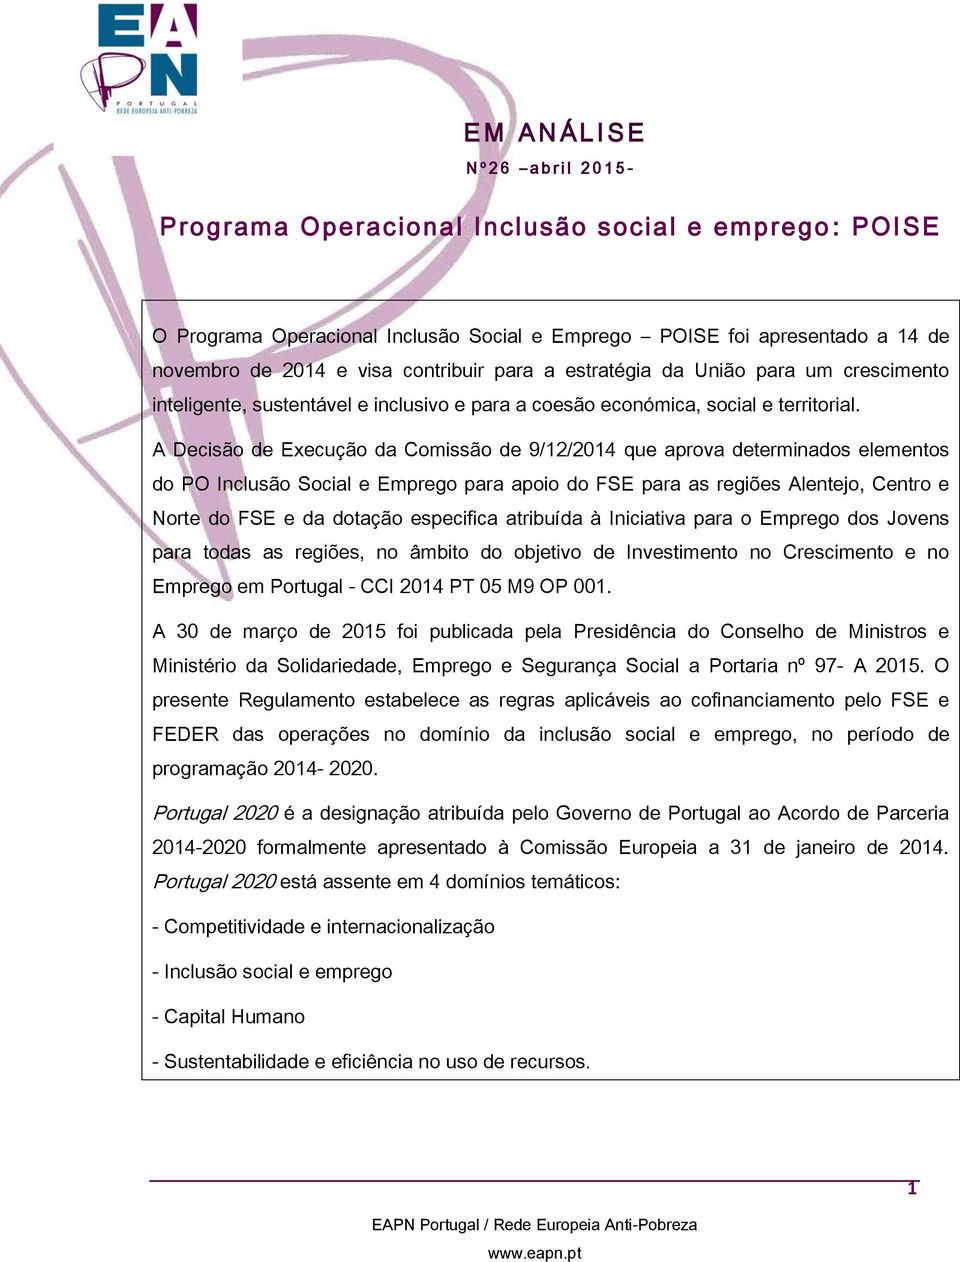 A Decisão de Execução da Comissão de 9/12/2014 que aprova determinados elementos do PO Inclusão Social e Emprego para apoio do FSE para as regiões Alentejo, Centro e Norte do FSE e da dotação